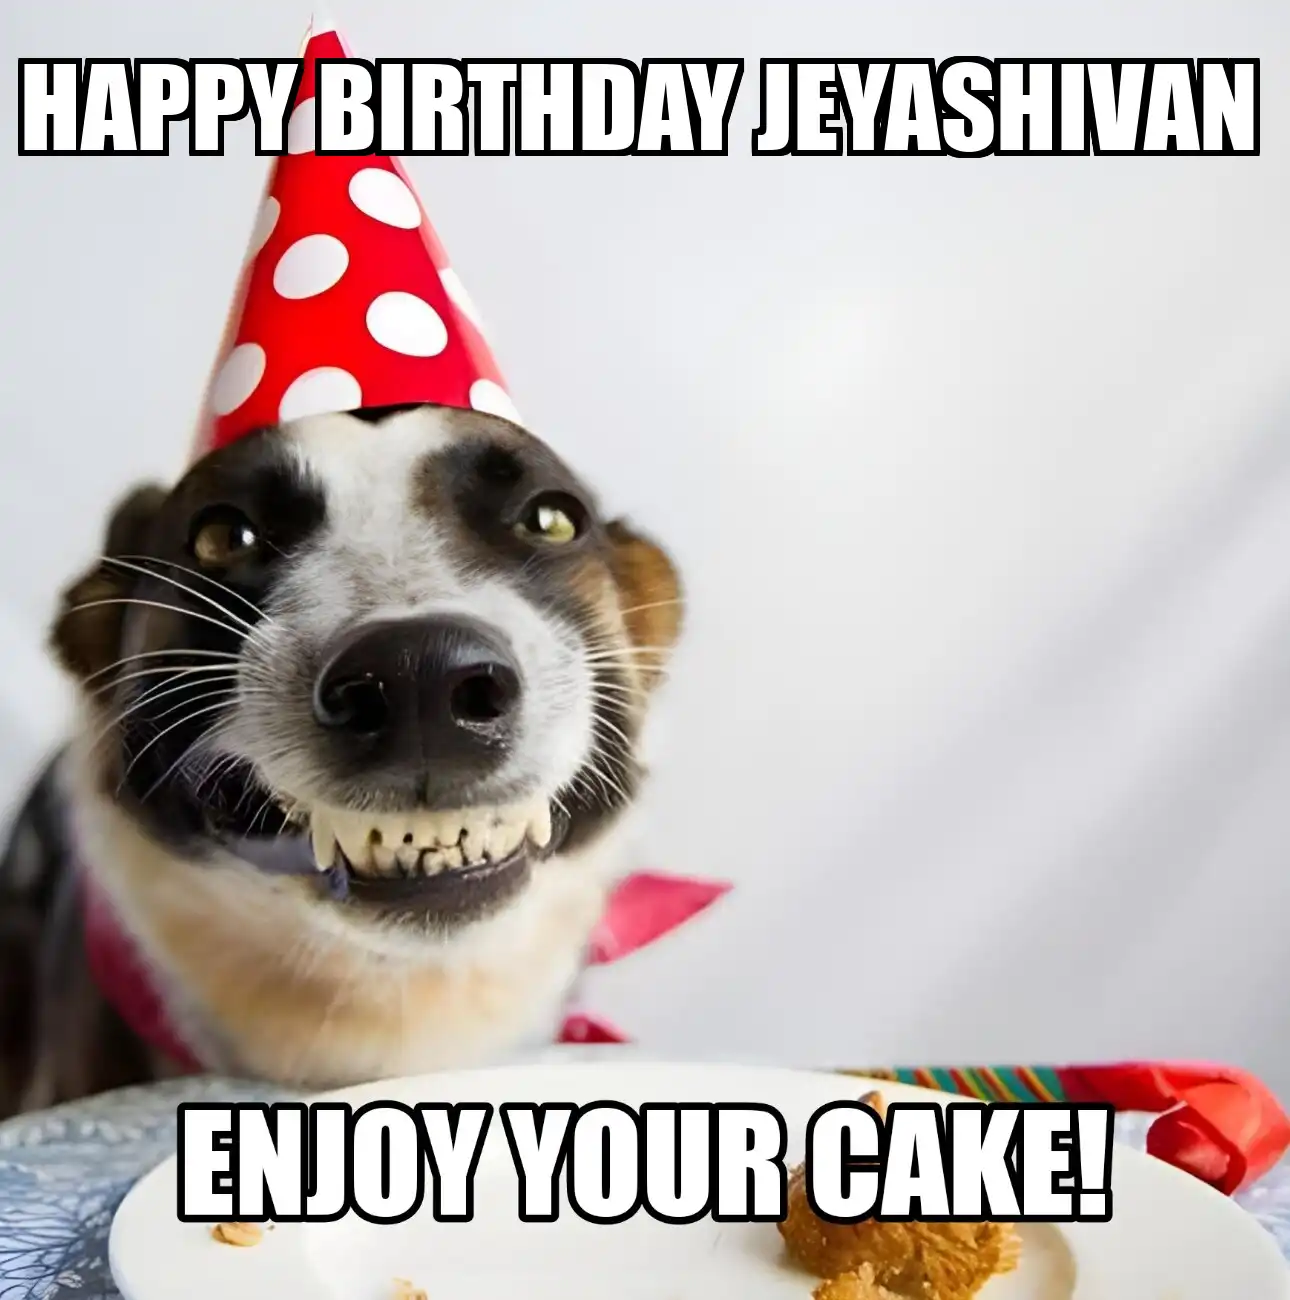 Happy Birthday Jeyashivan Enjoy Your Cake Dog Meme